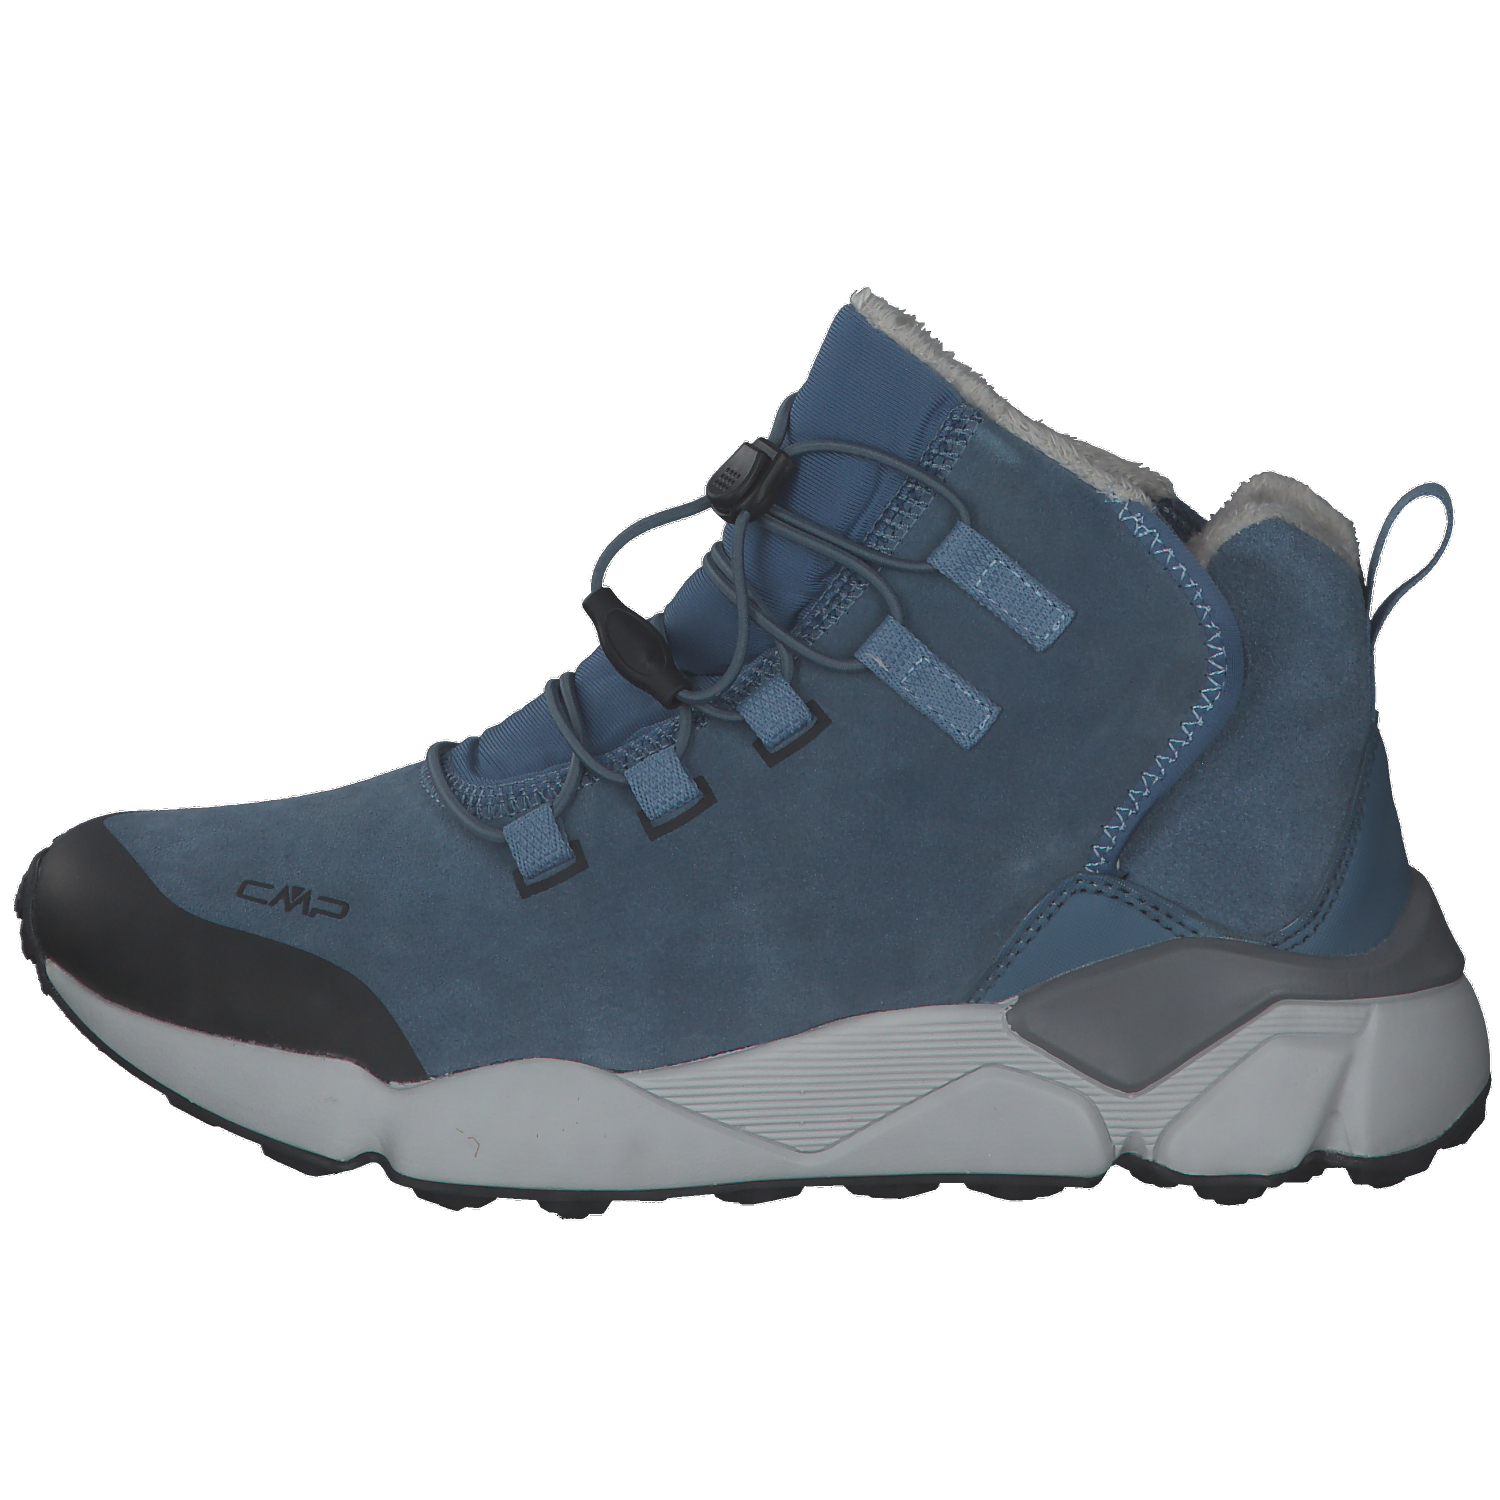 CMP Damen Boots Yumala Snow Boot WP 31Q4996 | eBay